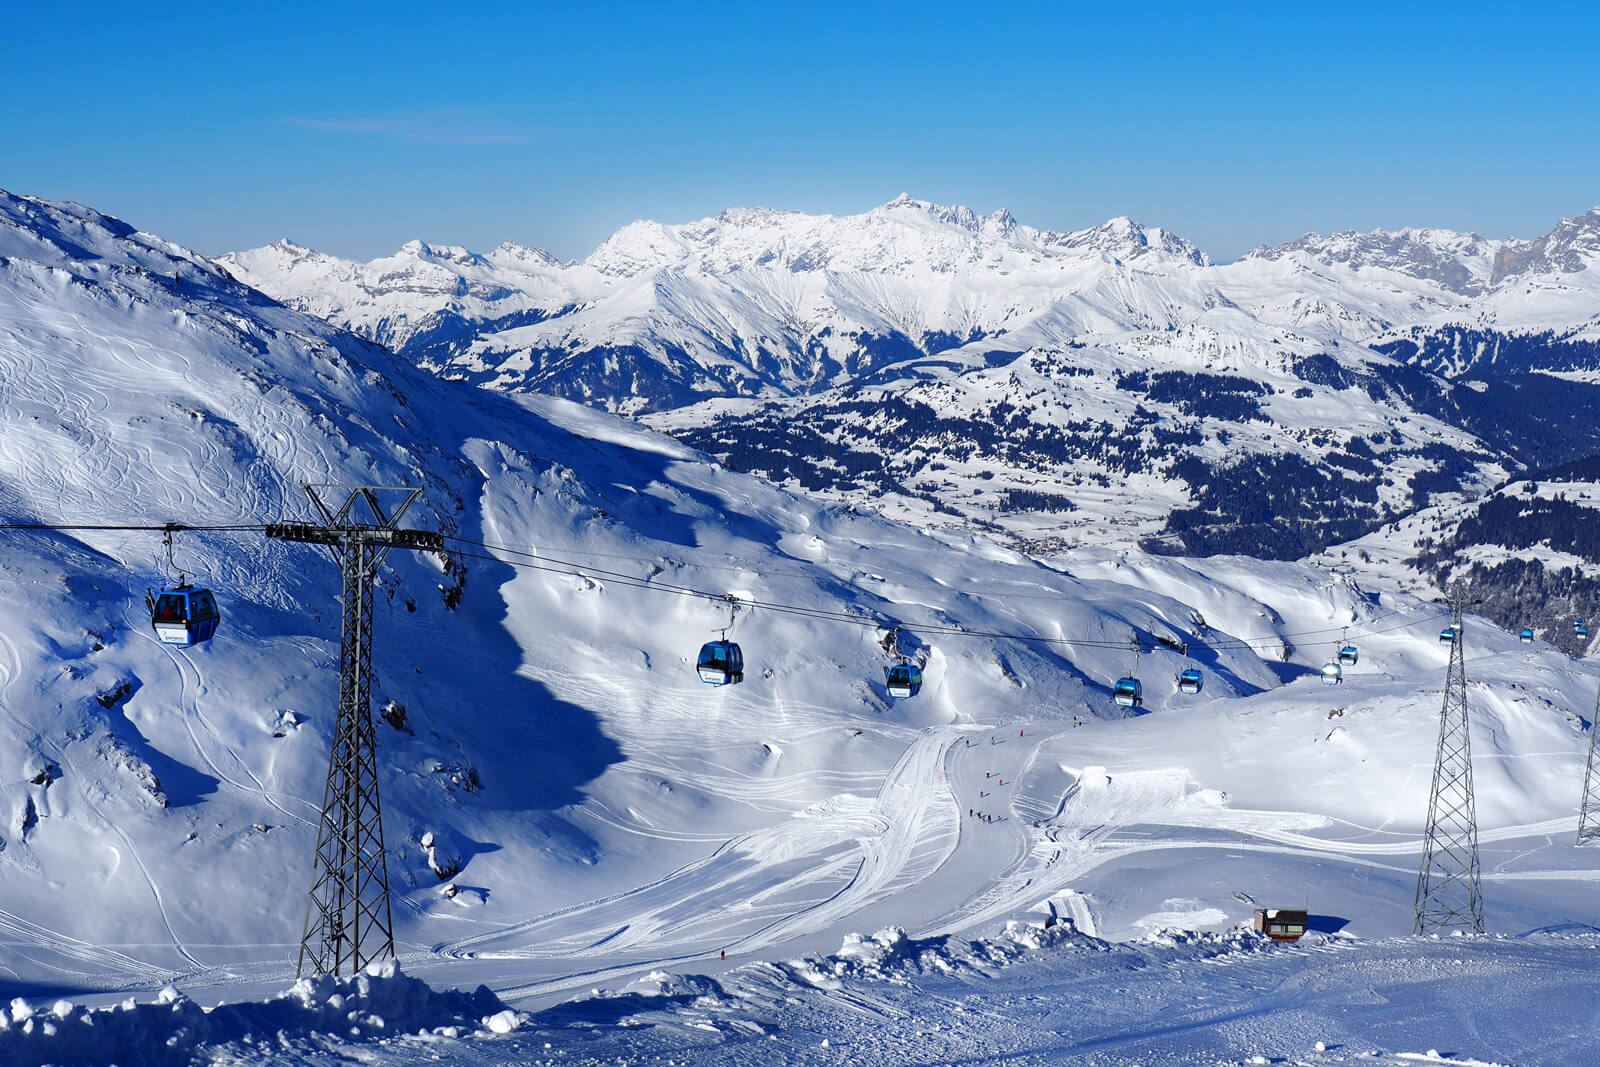 Davos, Switzerland - Parsenn Skiing